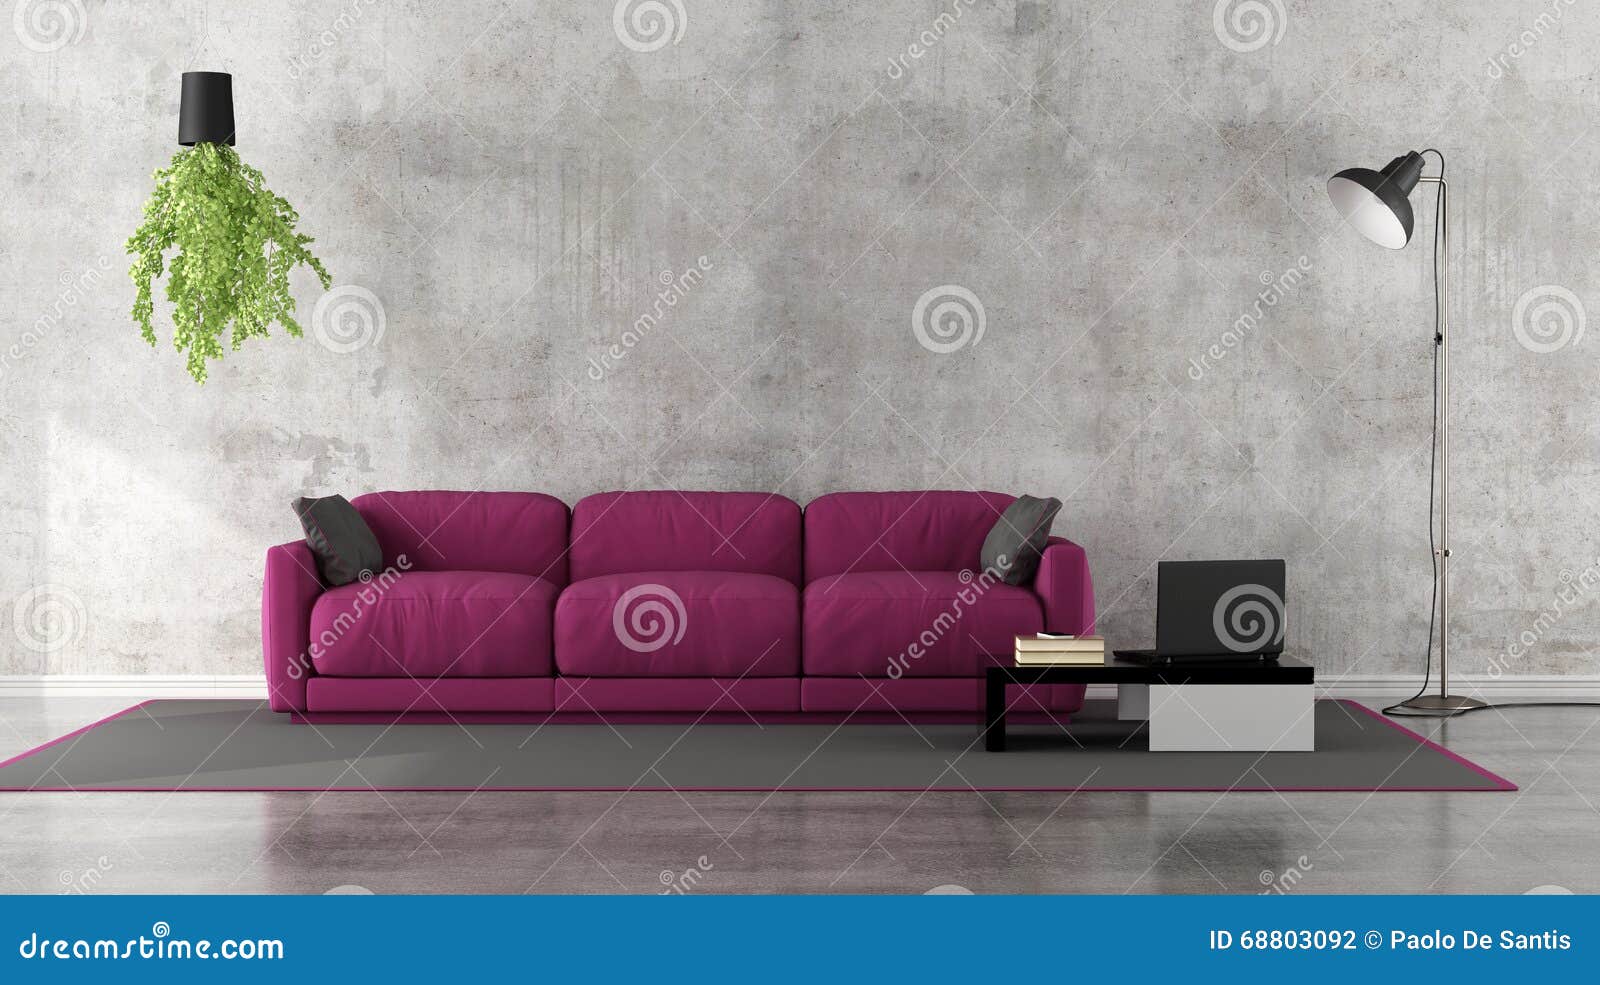 minimalist living room with purple sofa